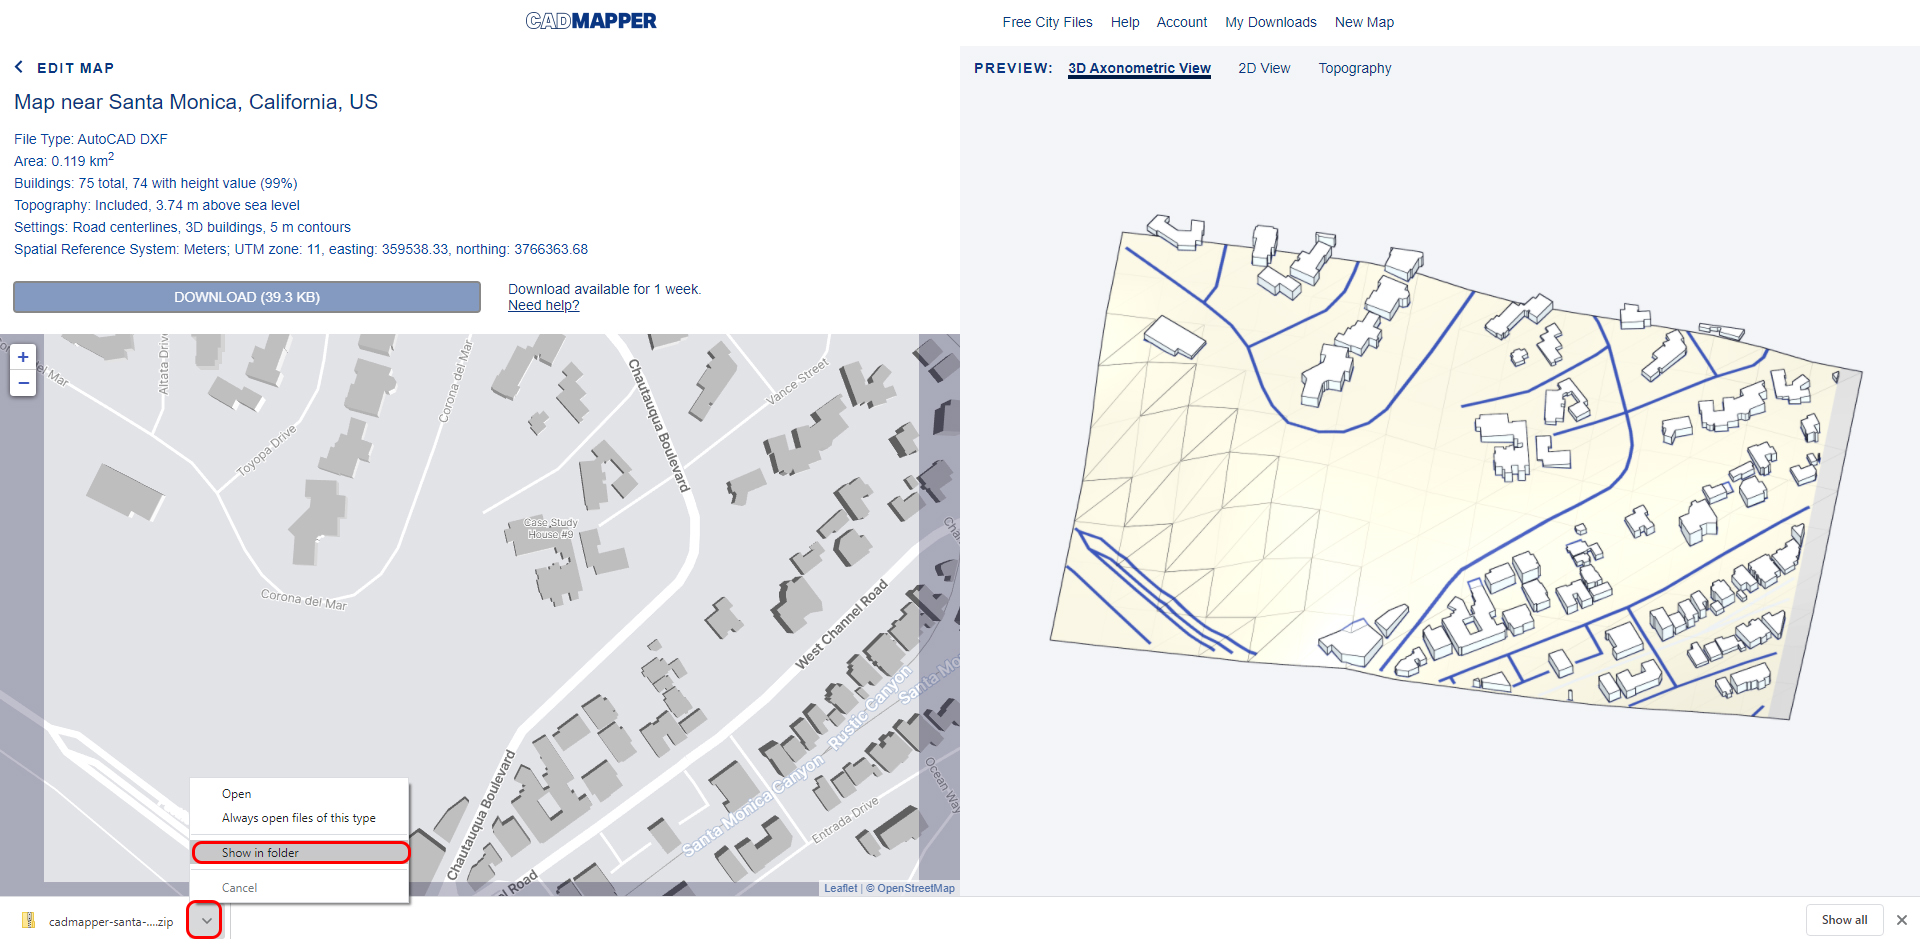 Esta imagen muestra el sitio web del mapeador CAD para el proyecto de la casa Eames y cómo abrir la carpeta descargada.